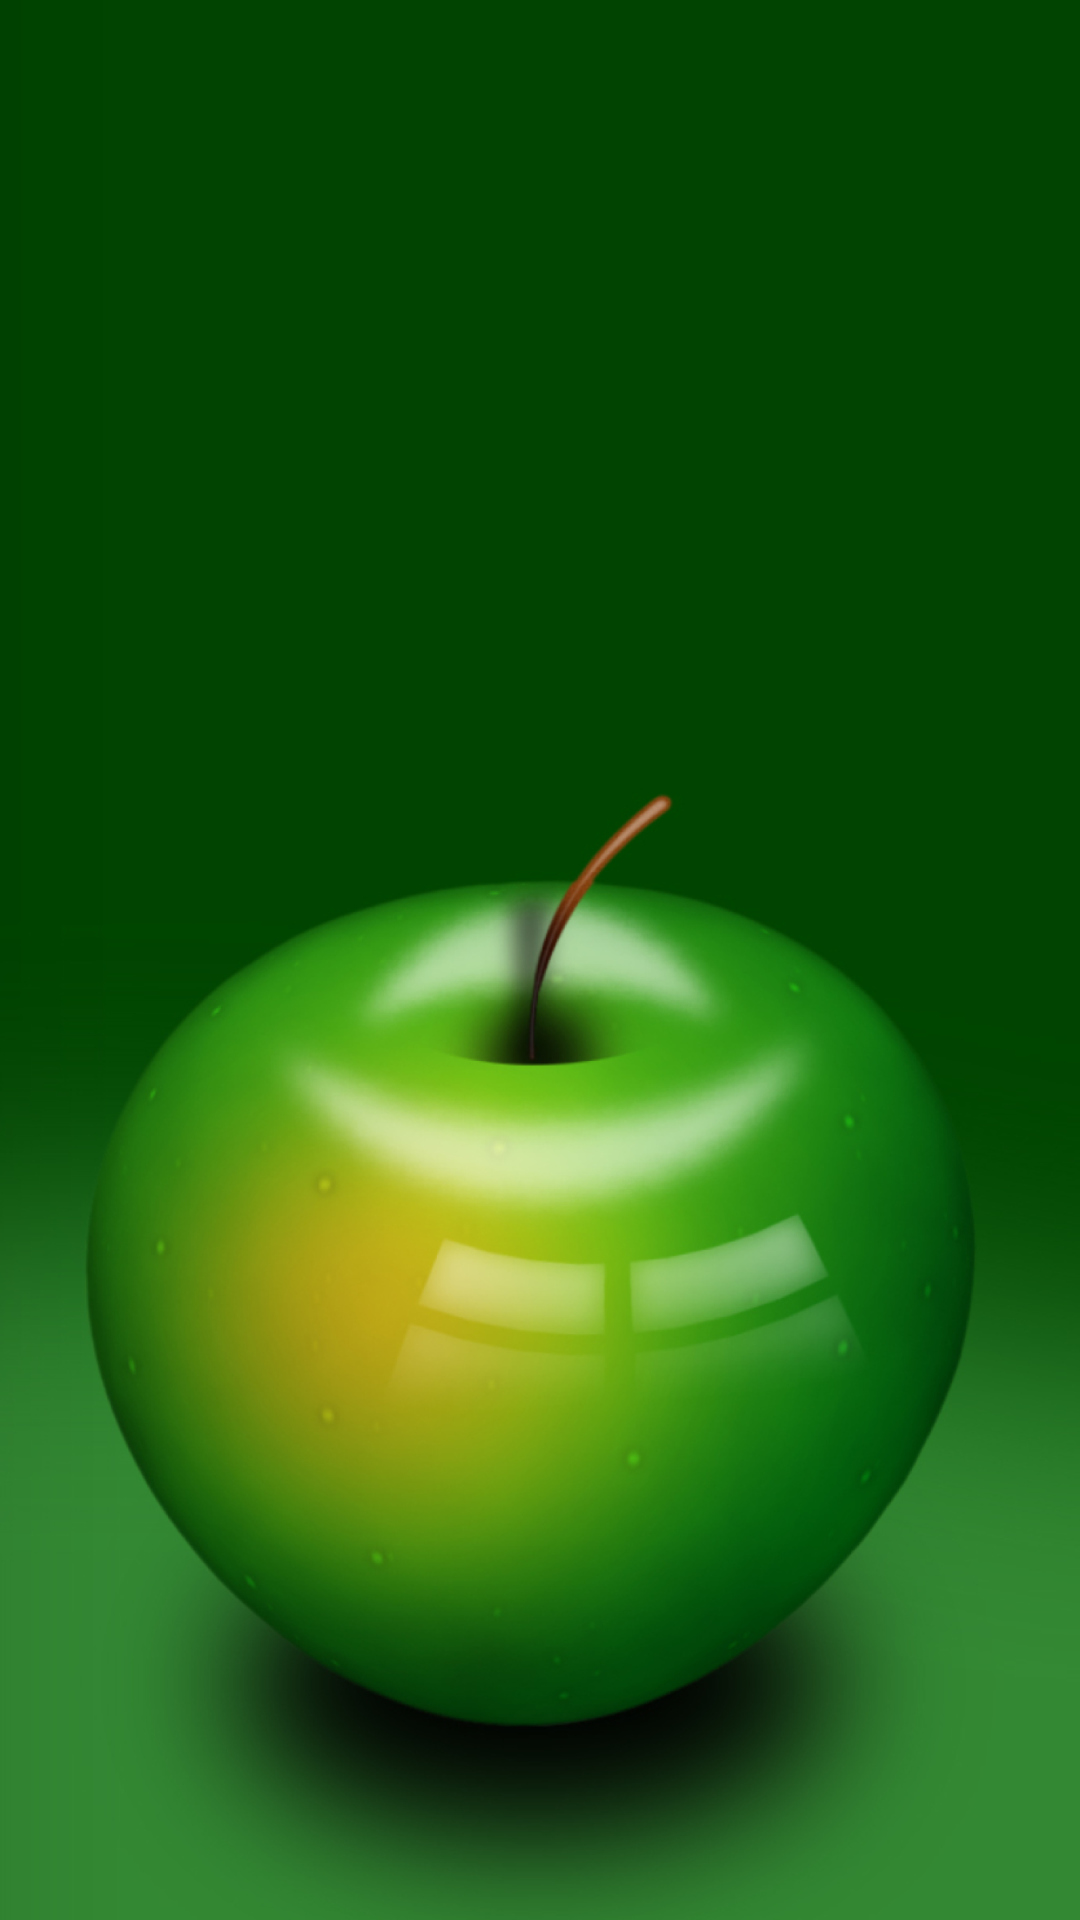 Das Green Apple Wallpaper 1080x1920